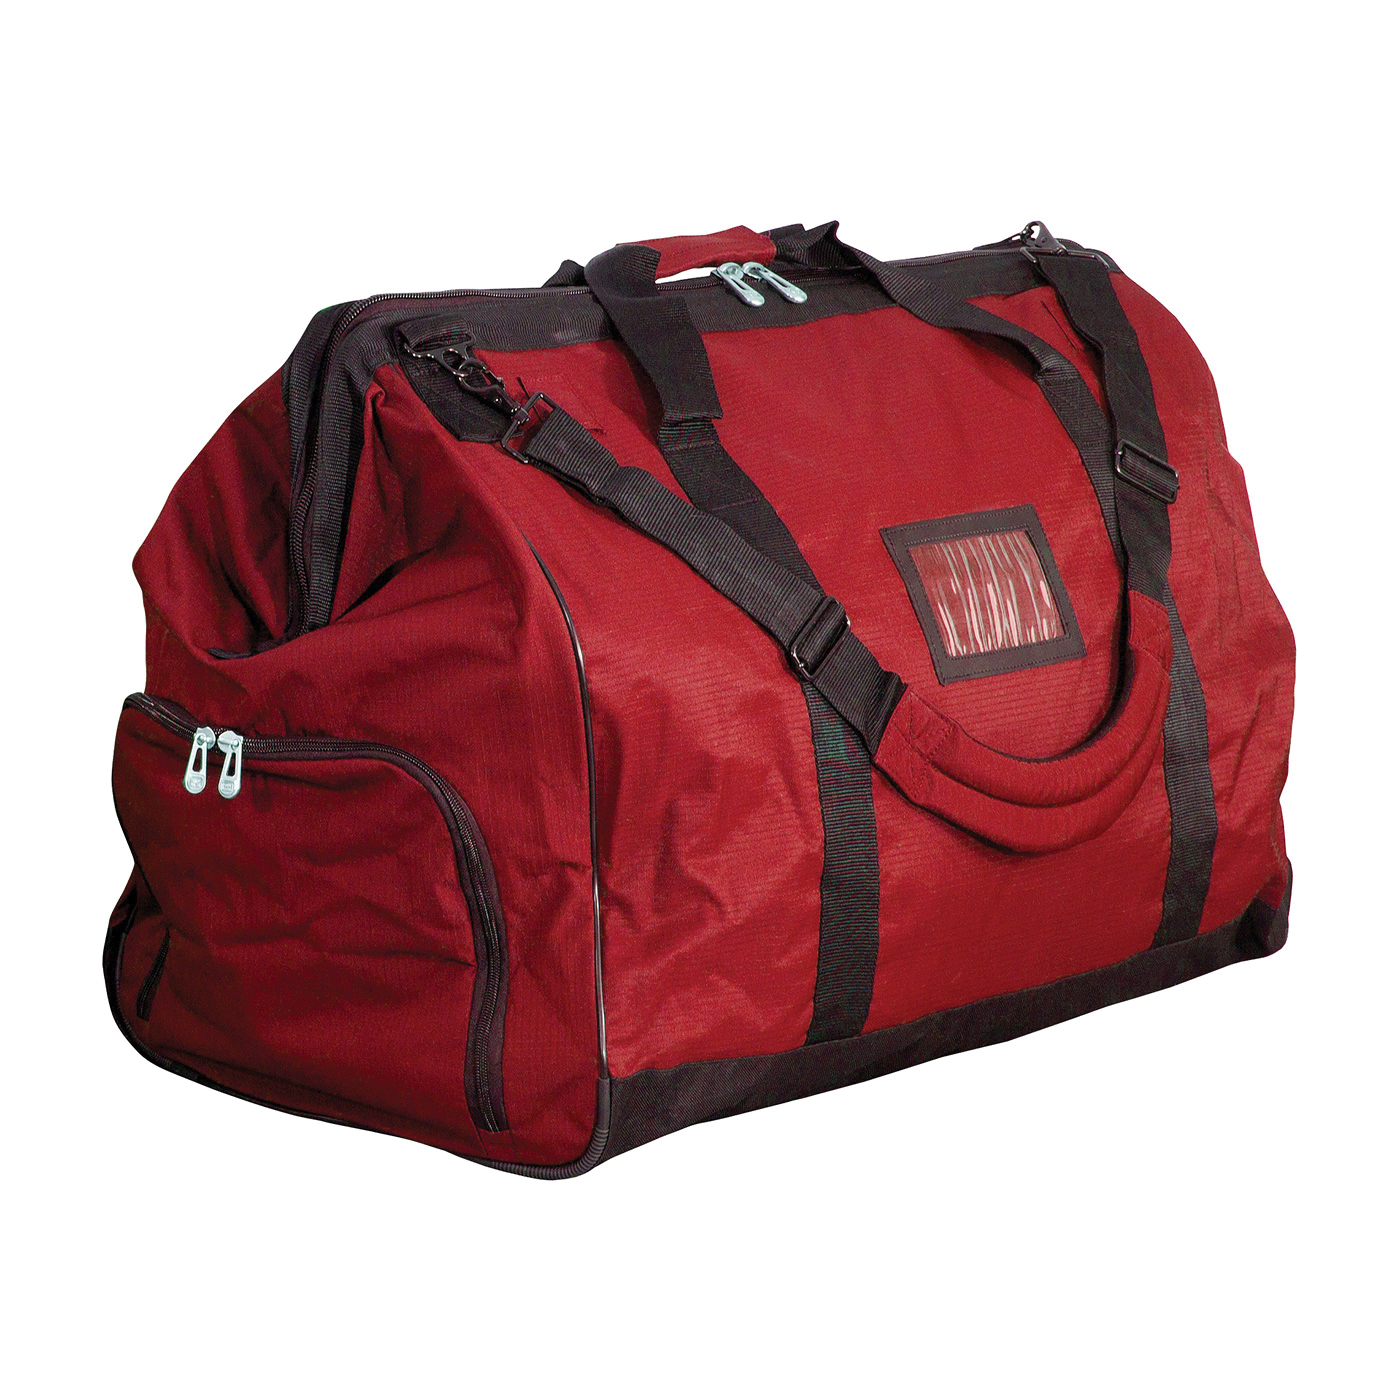 PIP® 903-GB651 Gear Bag, Red, Polyester, 22 in H x 16-1/2 in W x 28 in D